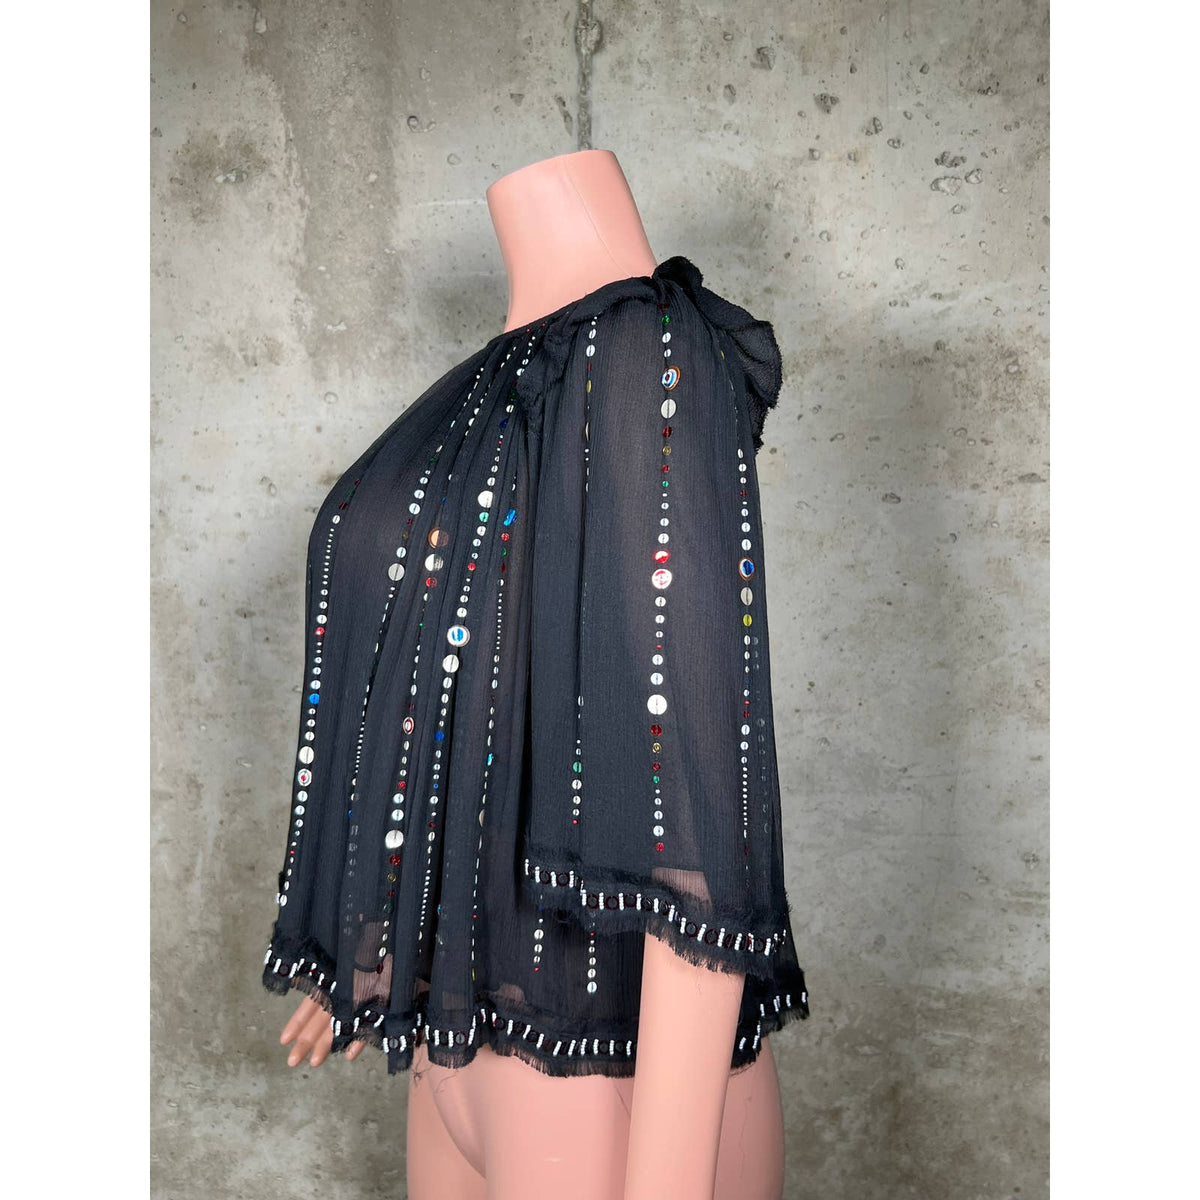 Isabel Marant Sequin Embellished 100% Silk Blouse Sz.4(36)